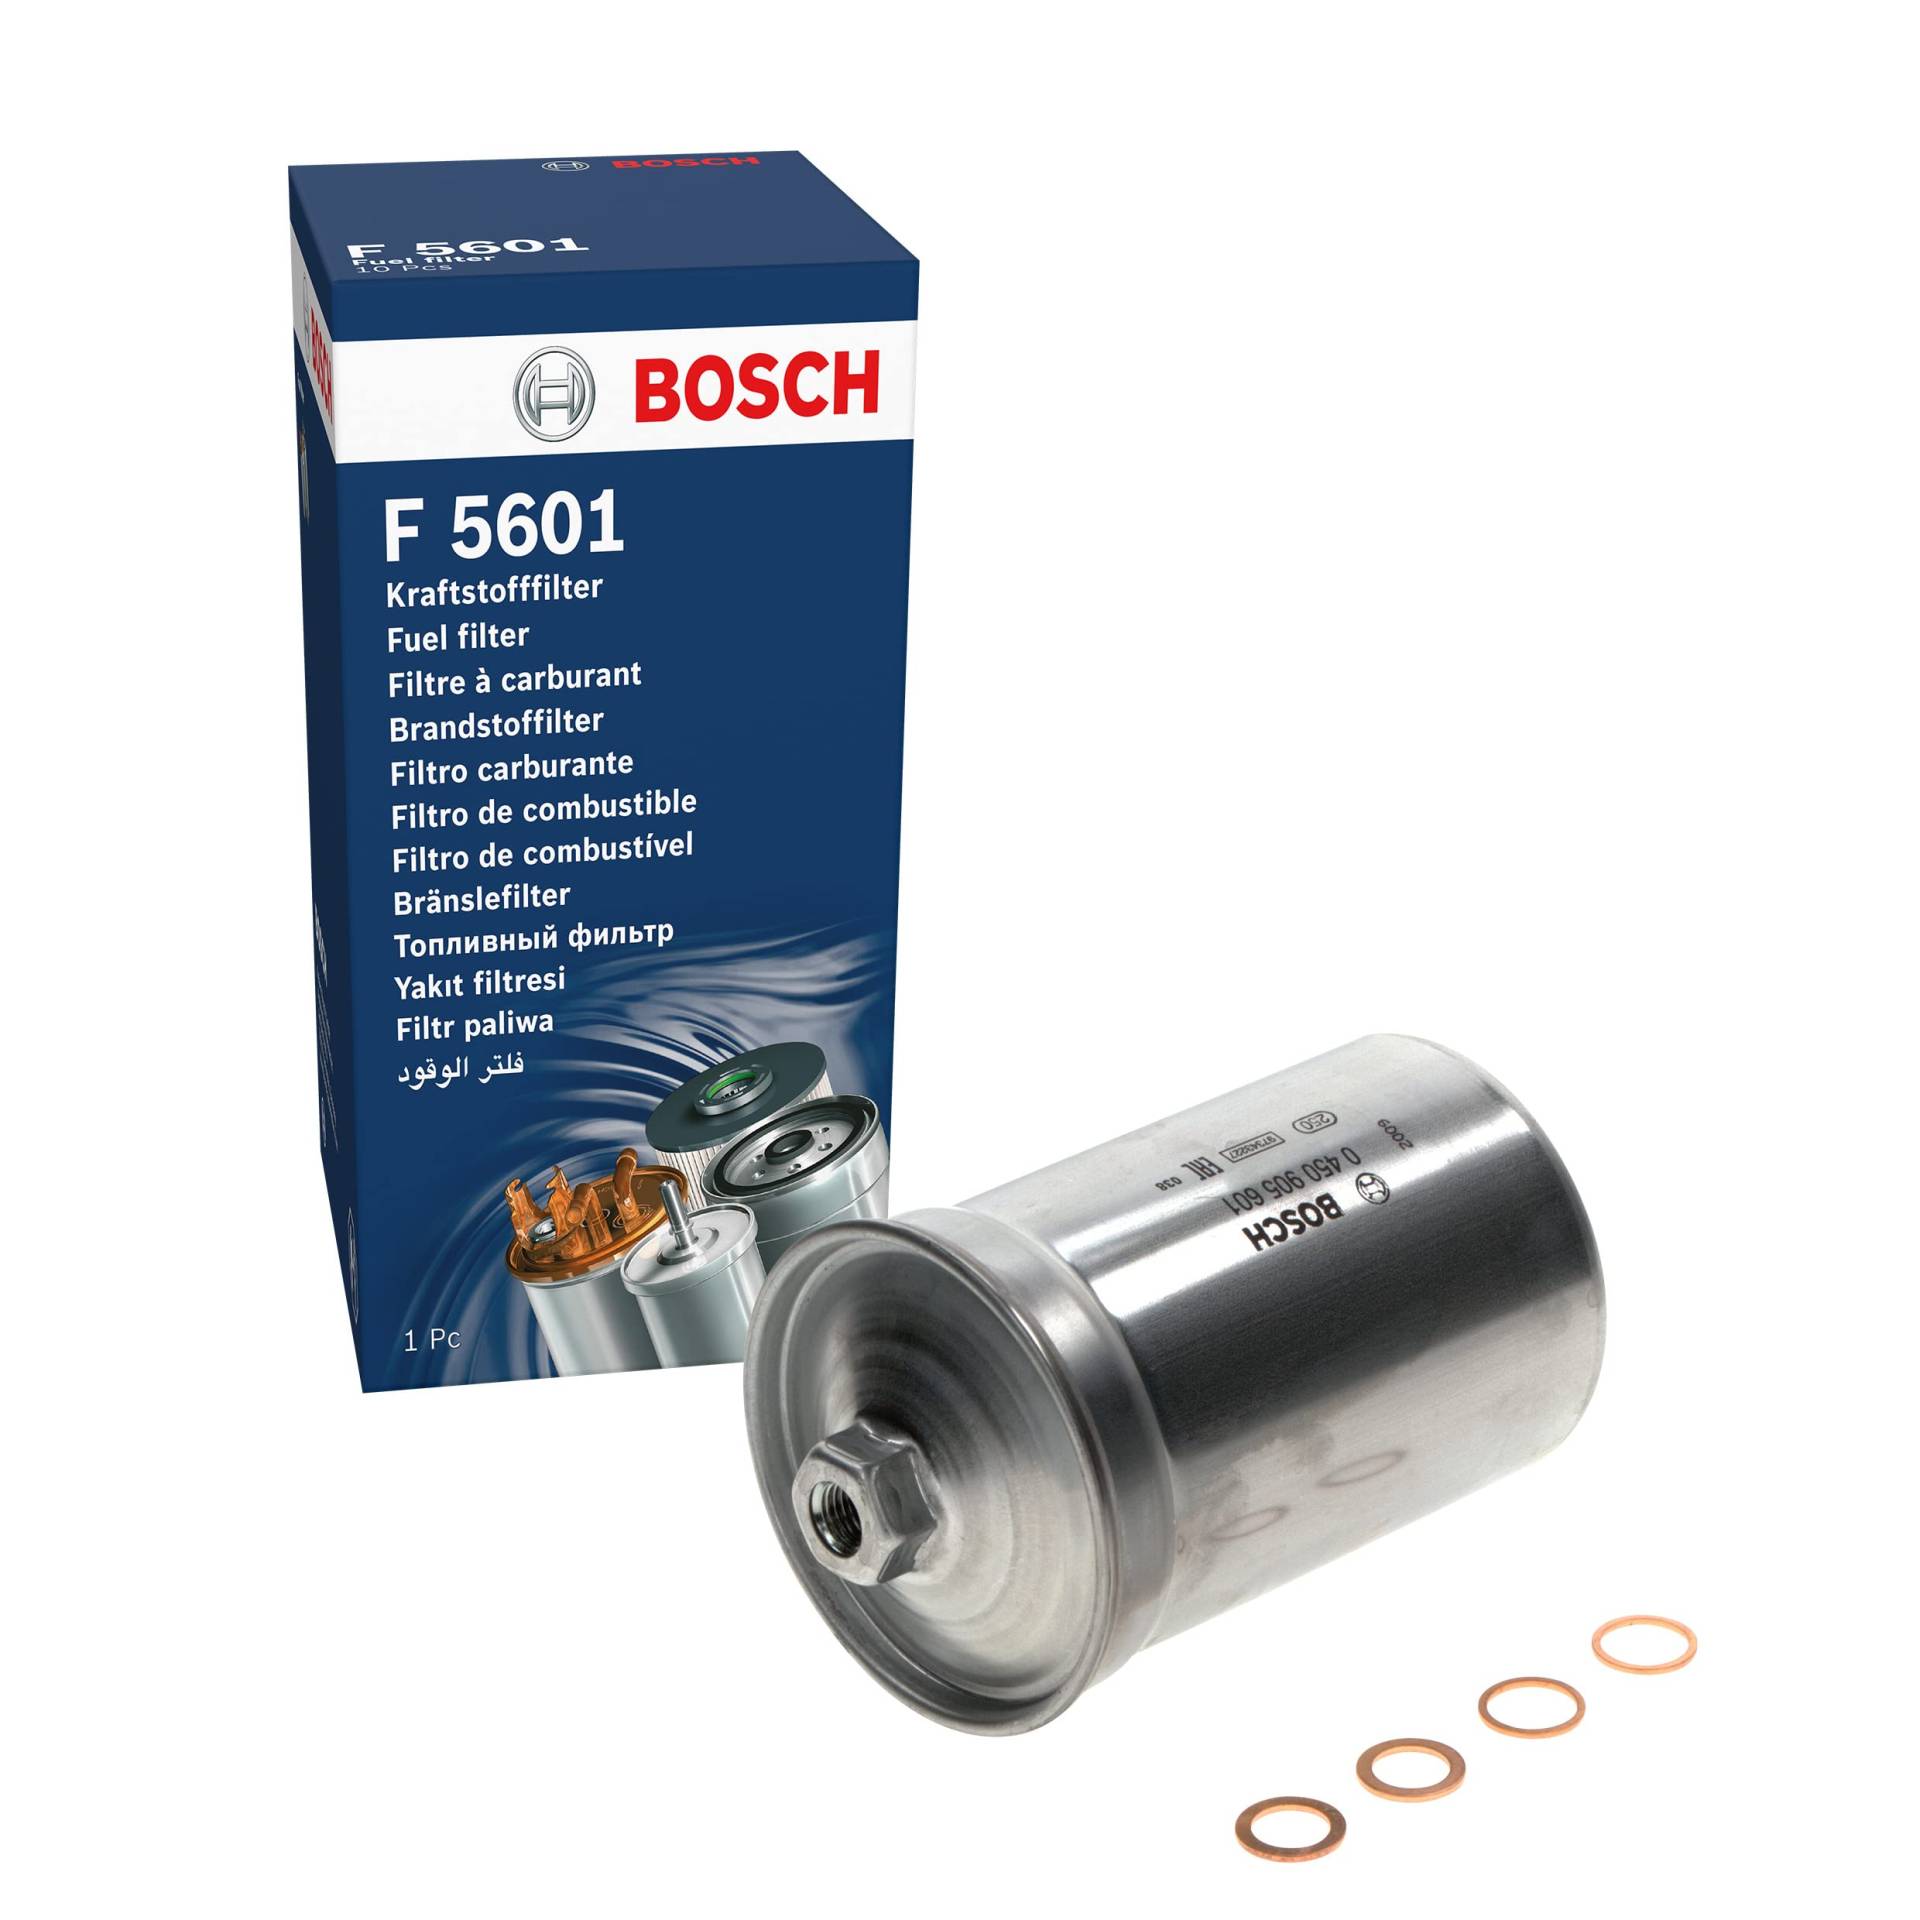 Bosch F5601 - Benzinfilter Auto von Bosch Automotive